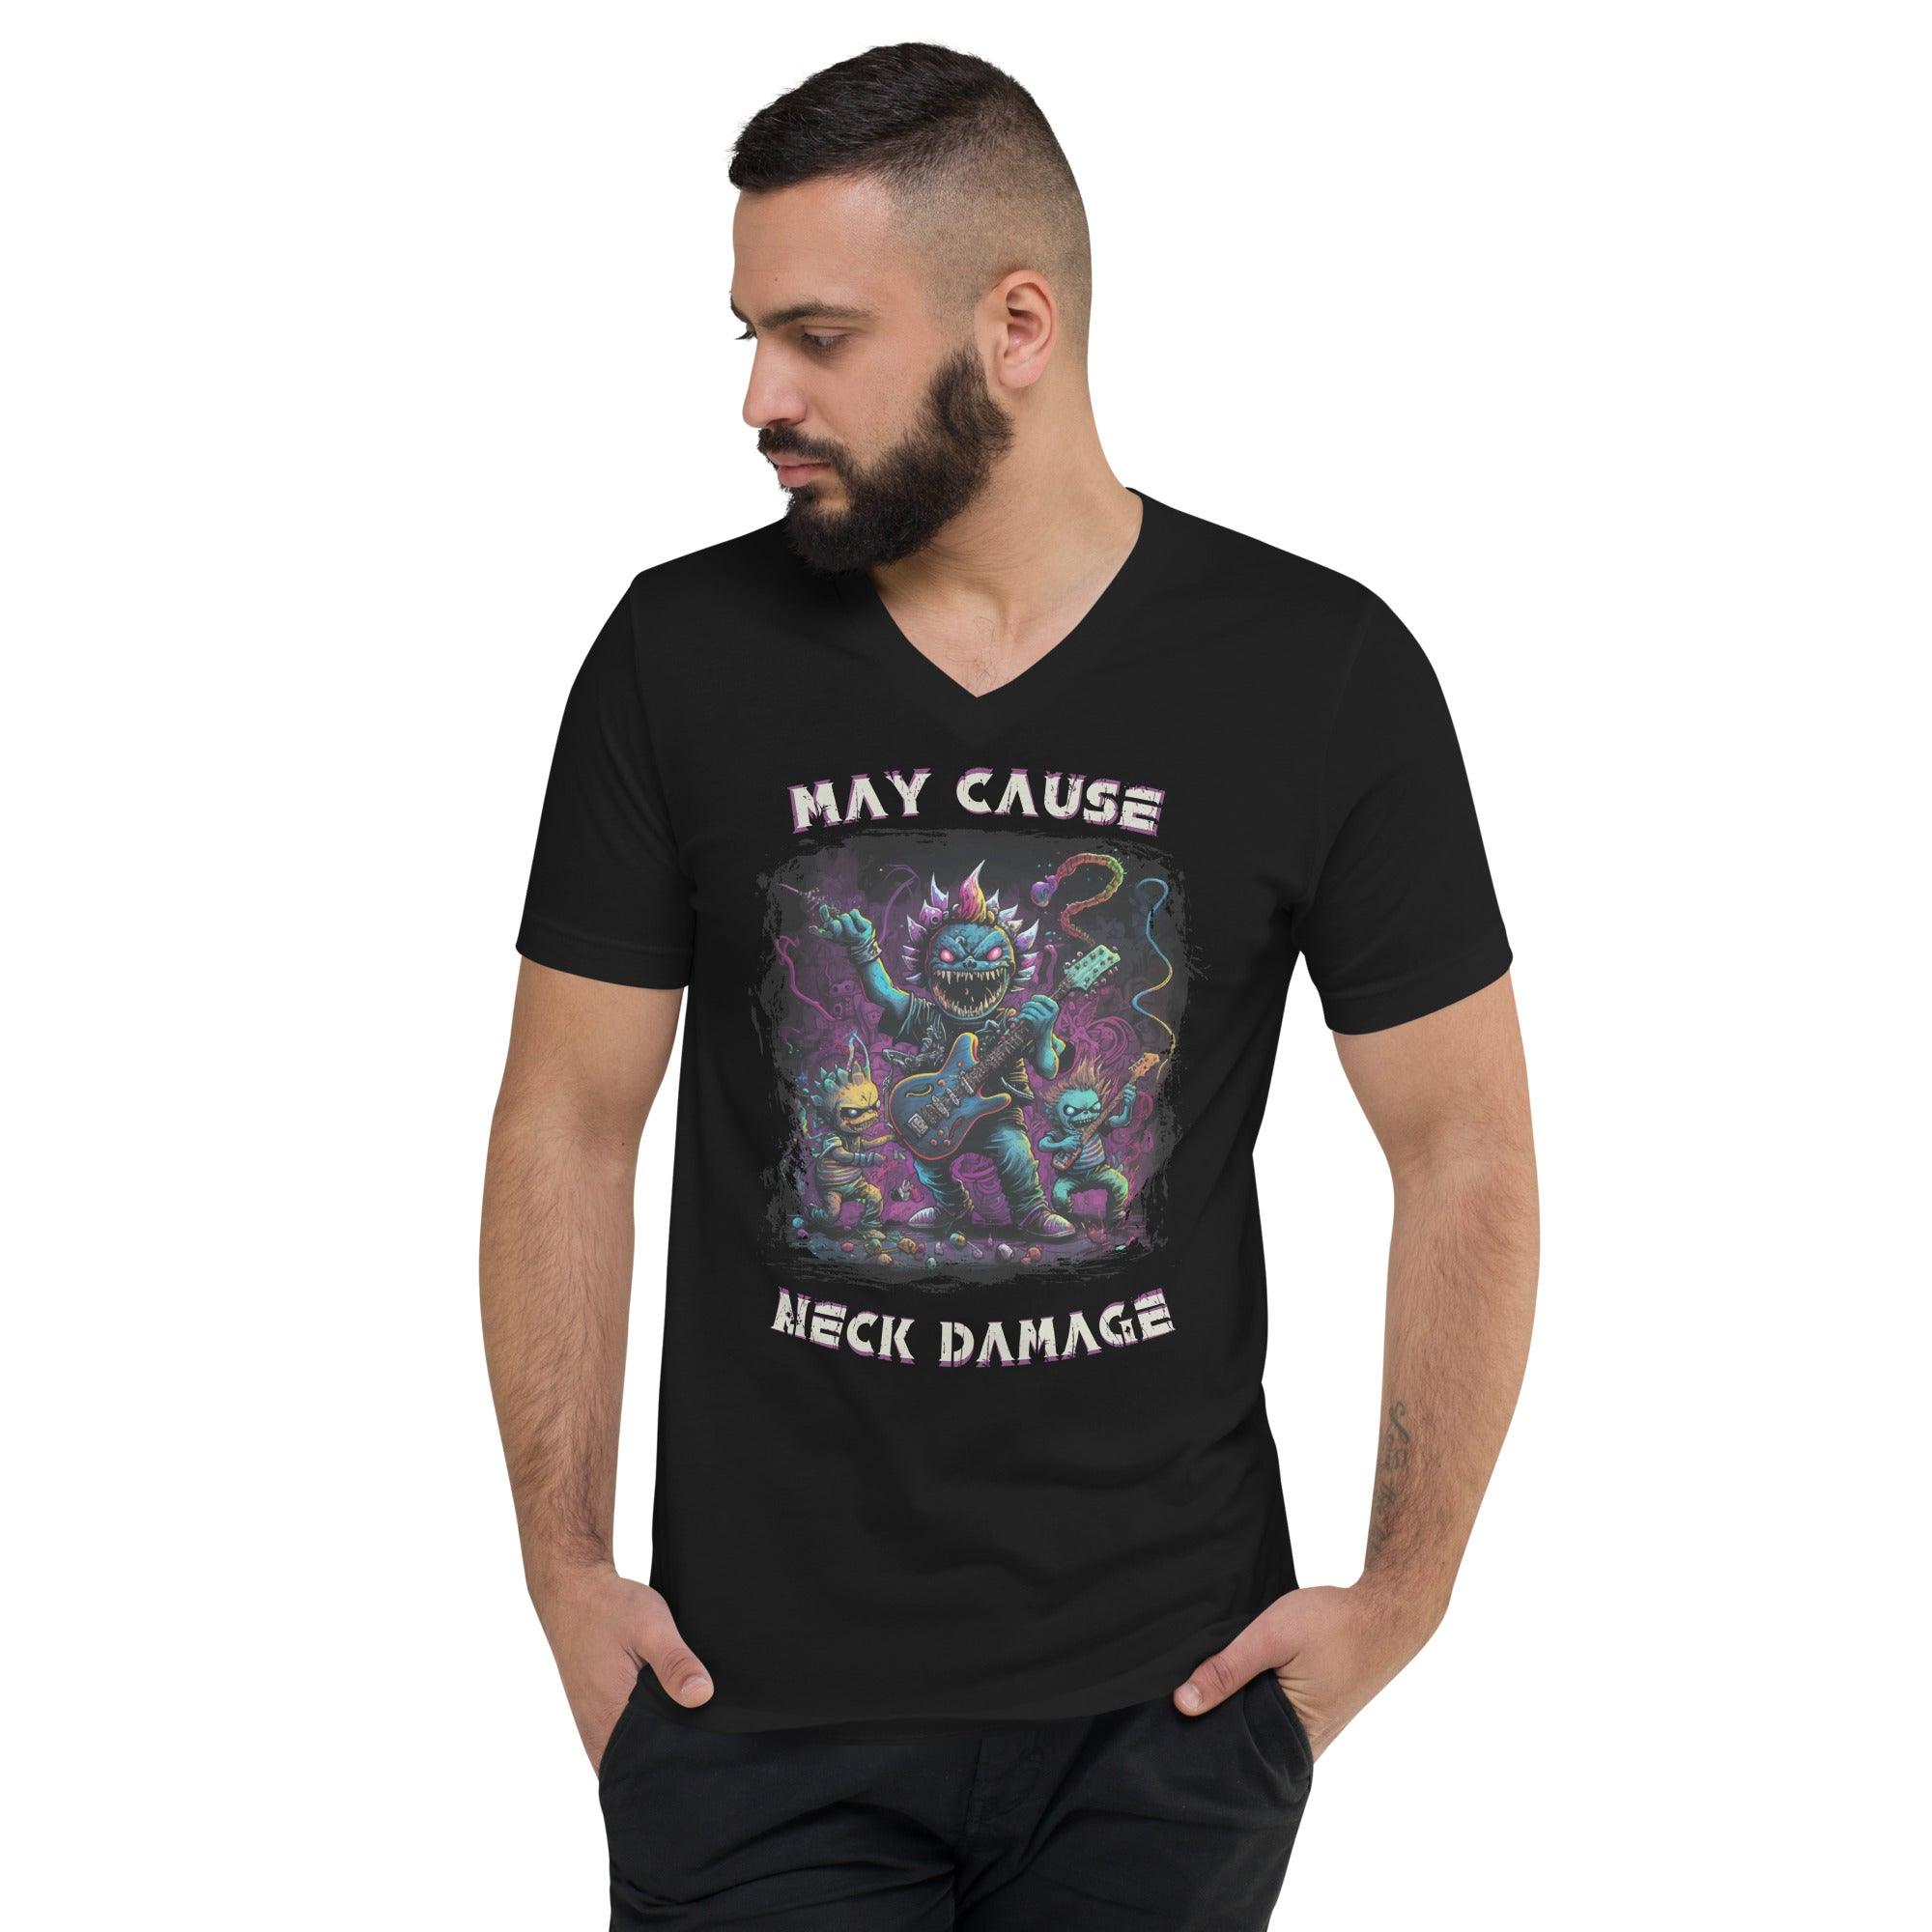 May Cause Neck Damage Unisex Short Sleeve V-Neck T-Shirt - Beyond T-shirts